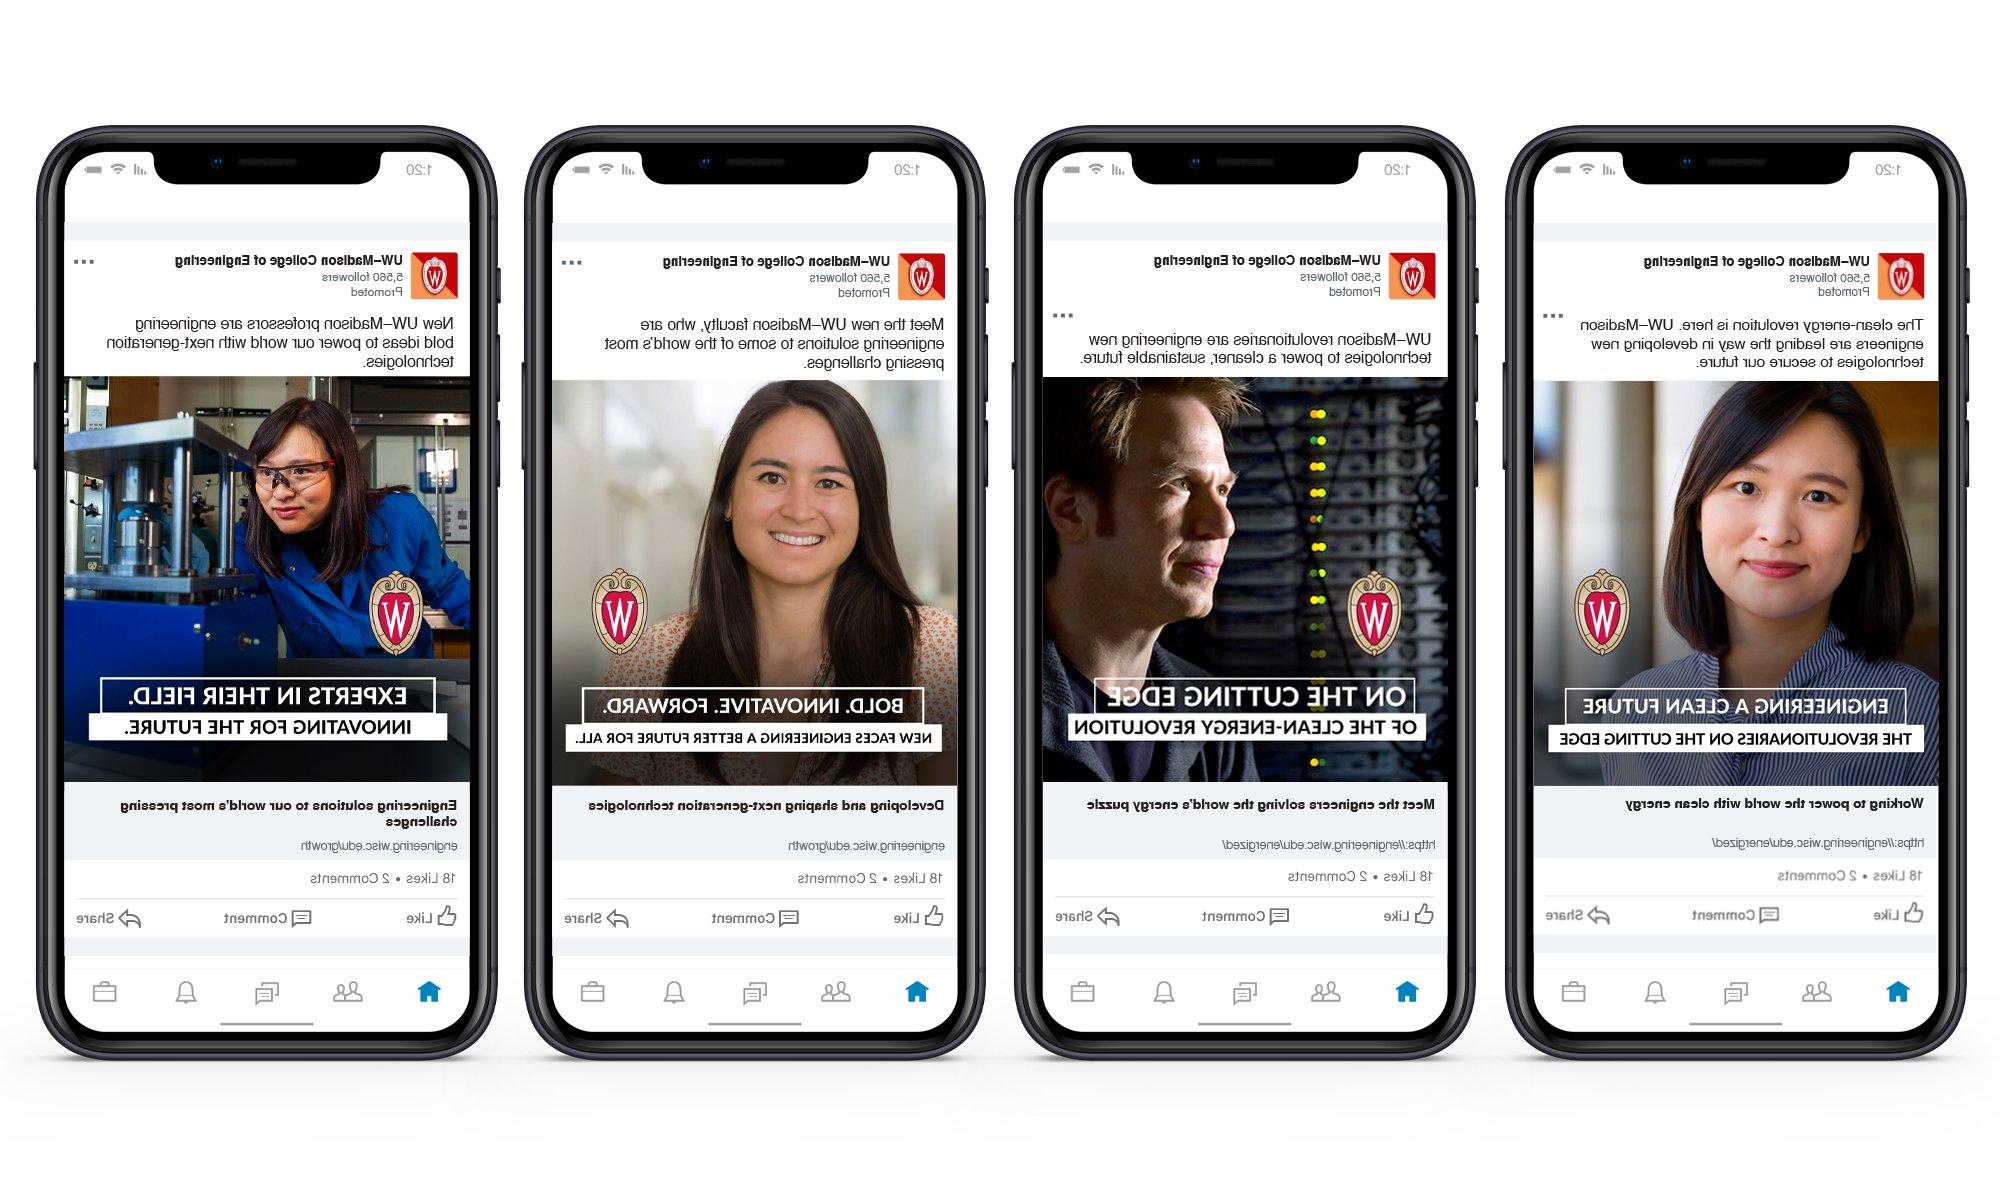 威斯康星大学麦迪逊分校工程学院的一系列四个社交媒体广告，传达了项目的好处和更多信息的URL